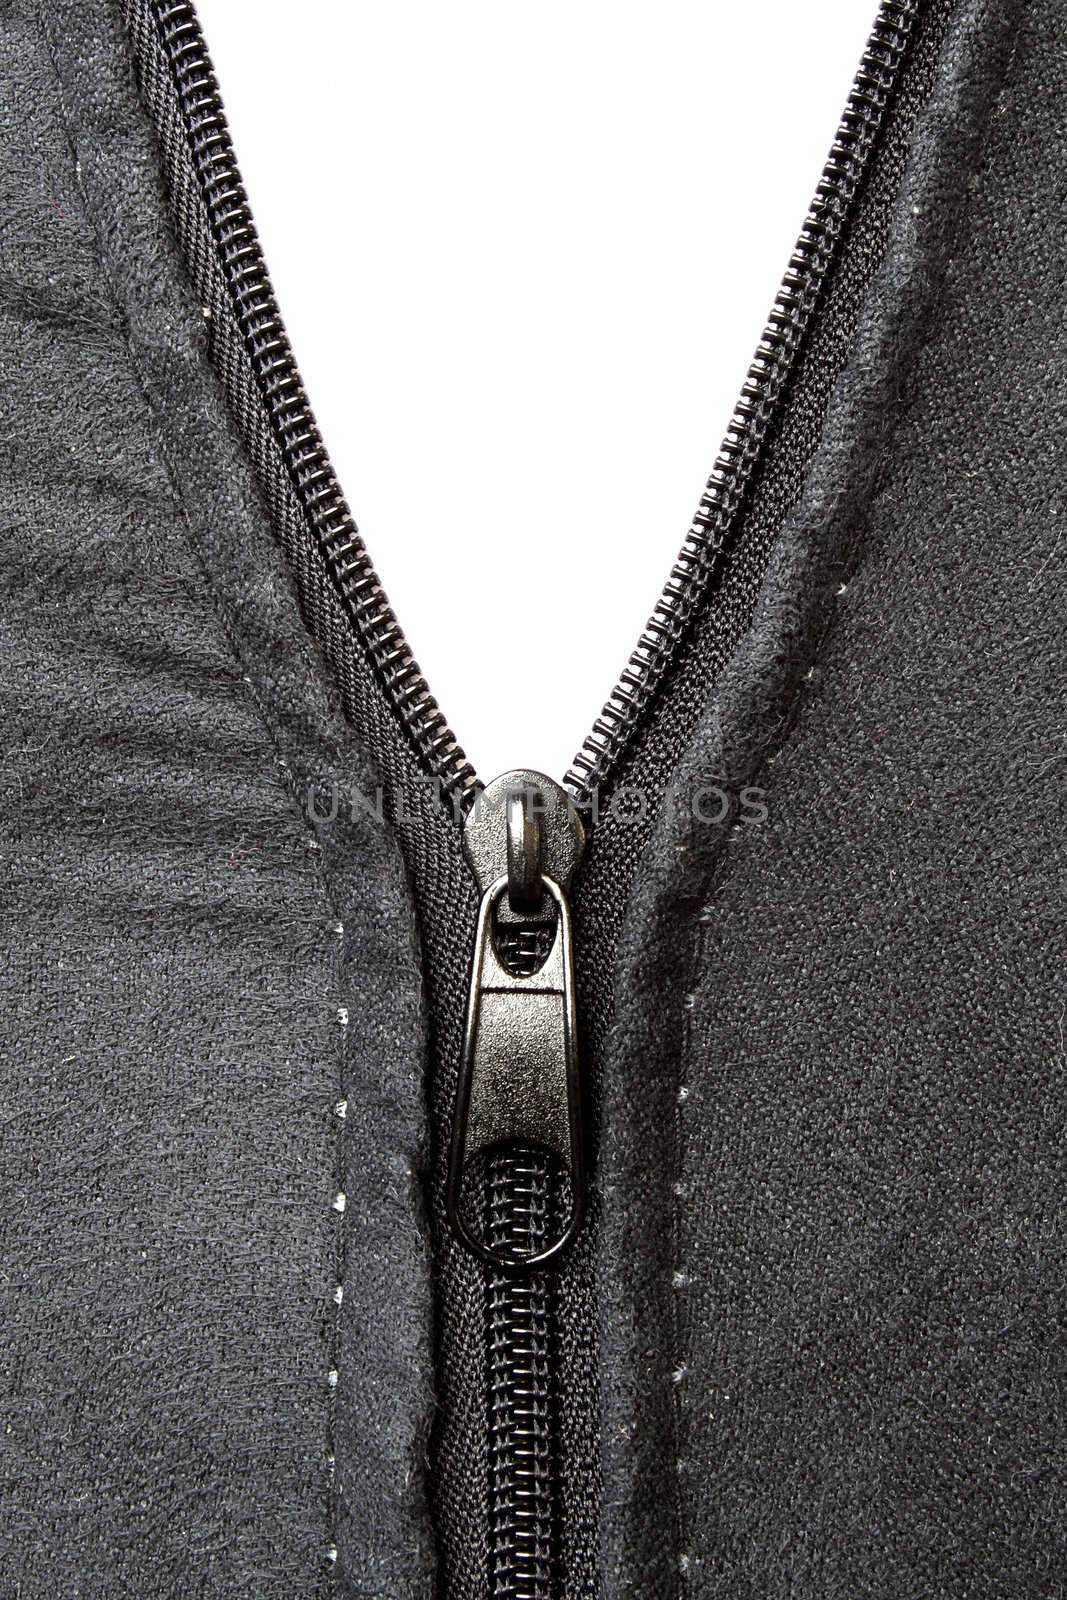 Black zipper by pulen